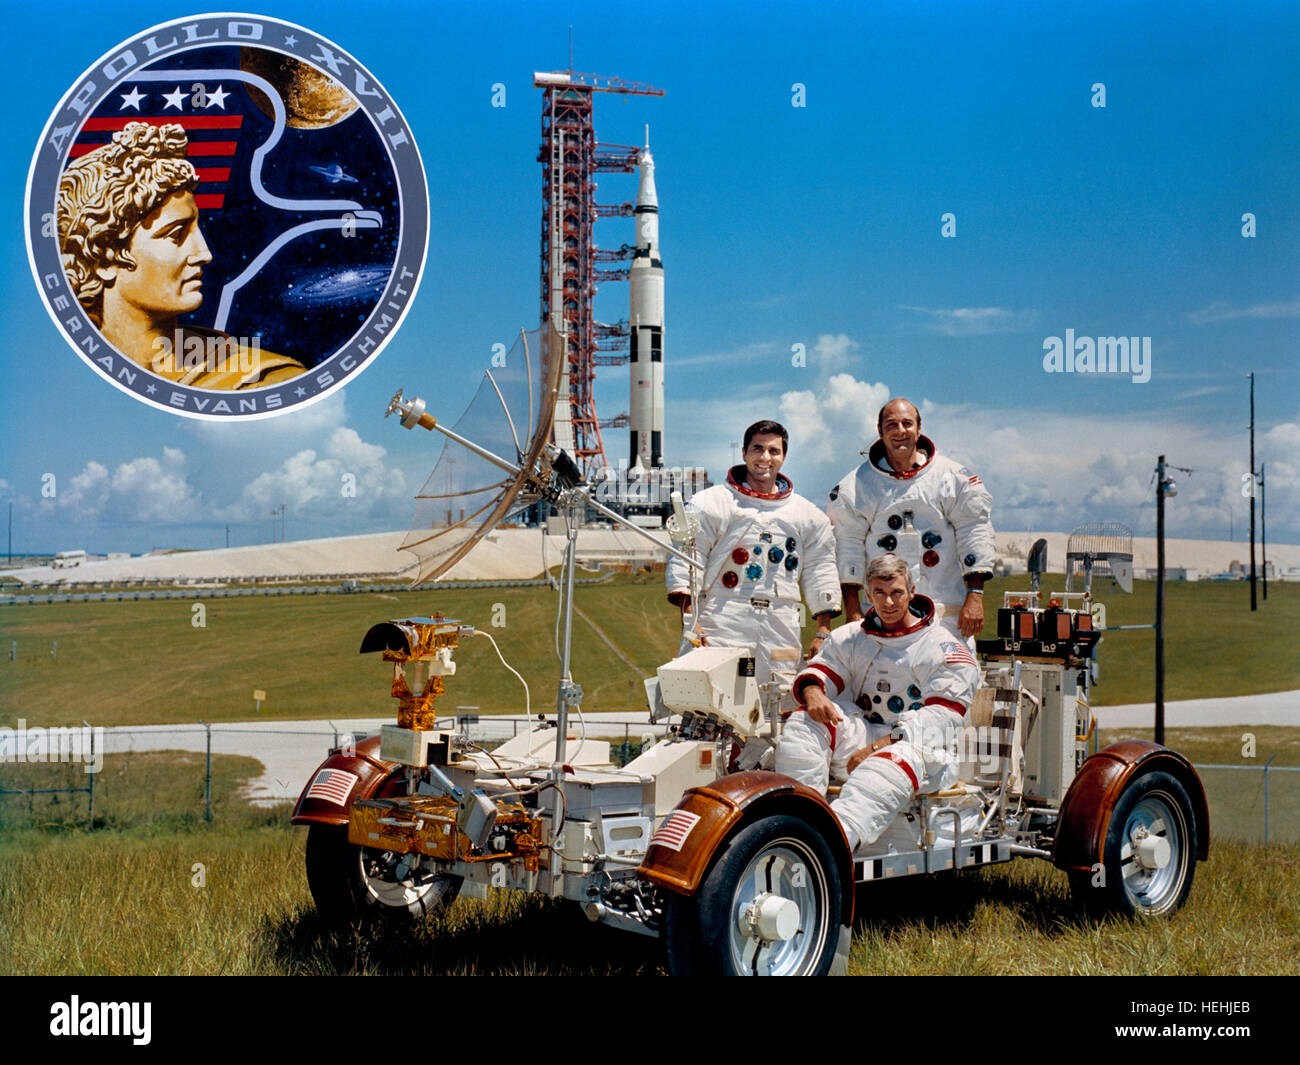 La NASA Apollo 17 atterraggio lunare missione il primo equipaggio astronauti (L-R) Harrison Schmitt, Gene Cernan e Ronald Evans pratica agendo lunare veicolo itinerante trainer con l'Apollo 17 Saturn V veicolo spaziale in background al Kennedy Space Center il 30 settembre 1971 nei pressi di Merritt Island, Florida. Foto Stock